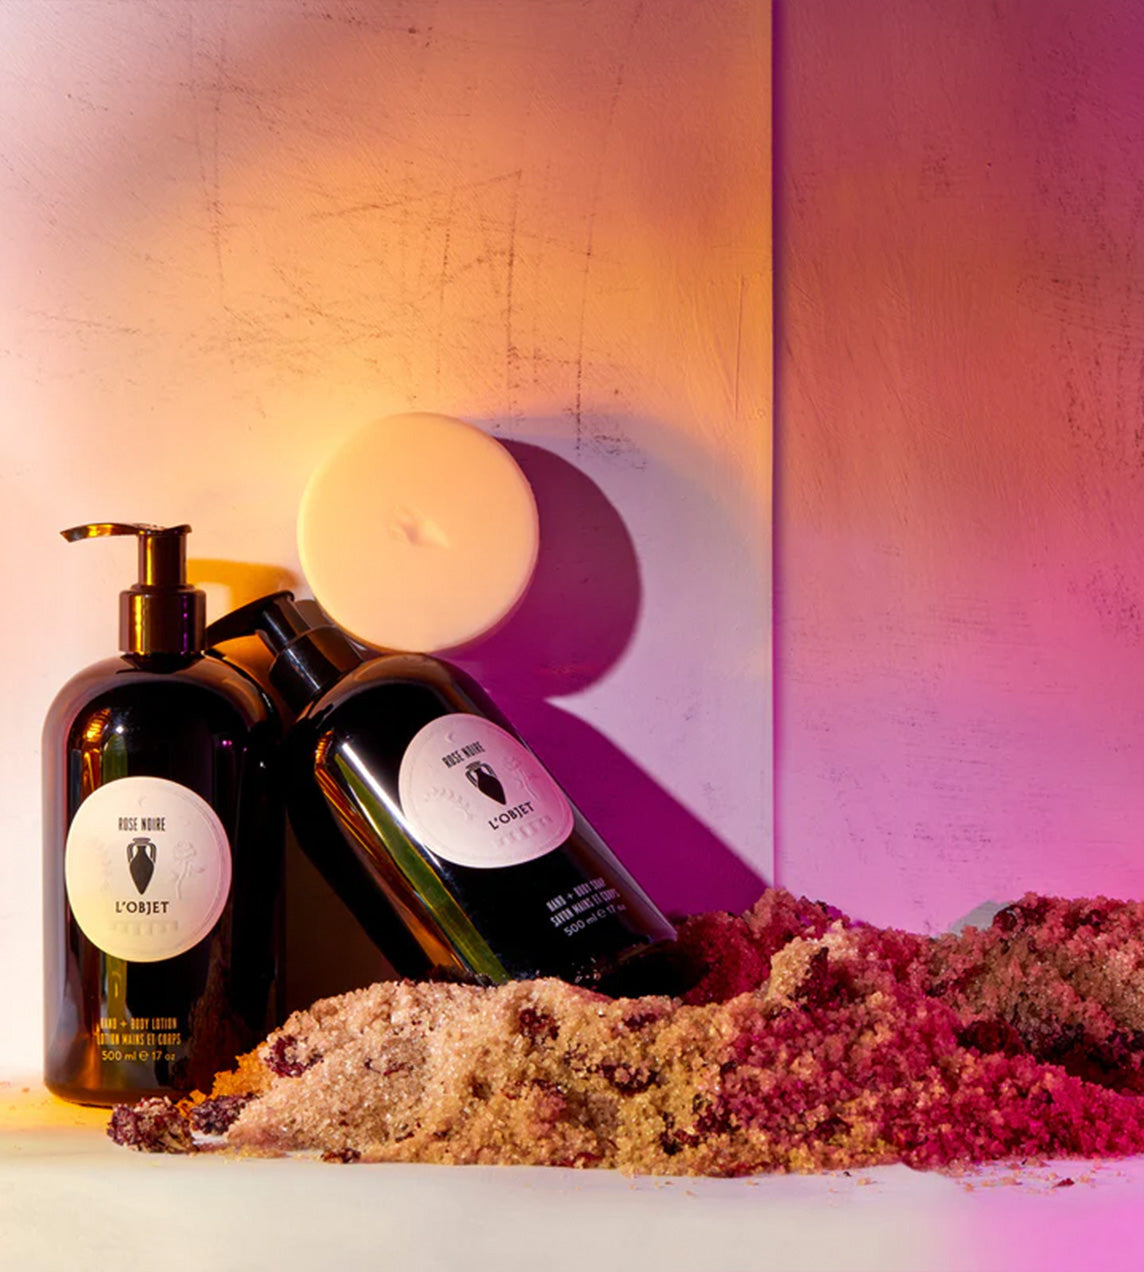 L'OBJET - 'Rose Noir' Lotion and Soap Gift Set